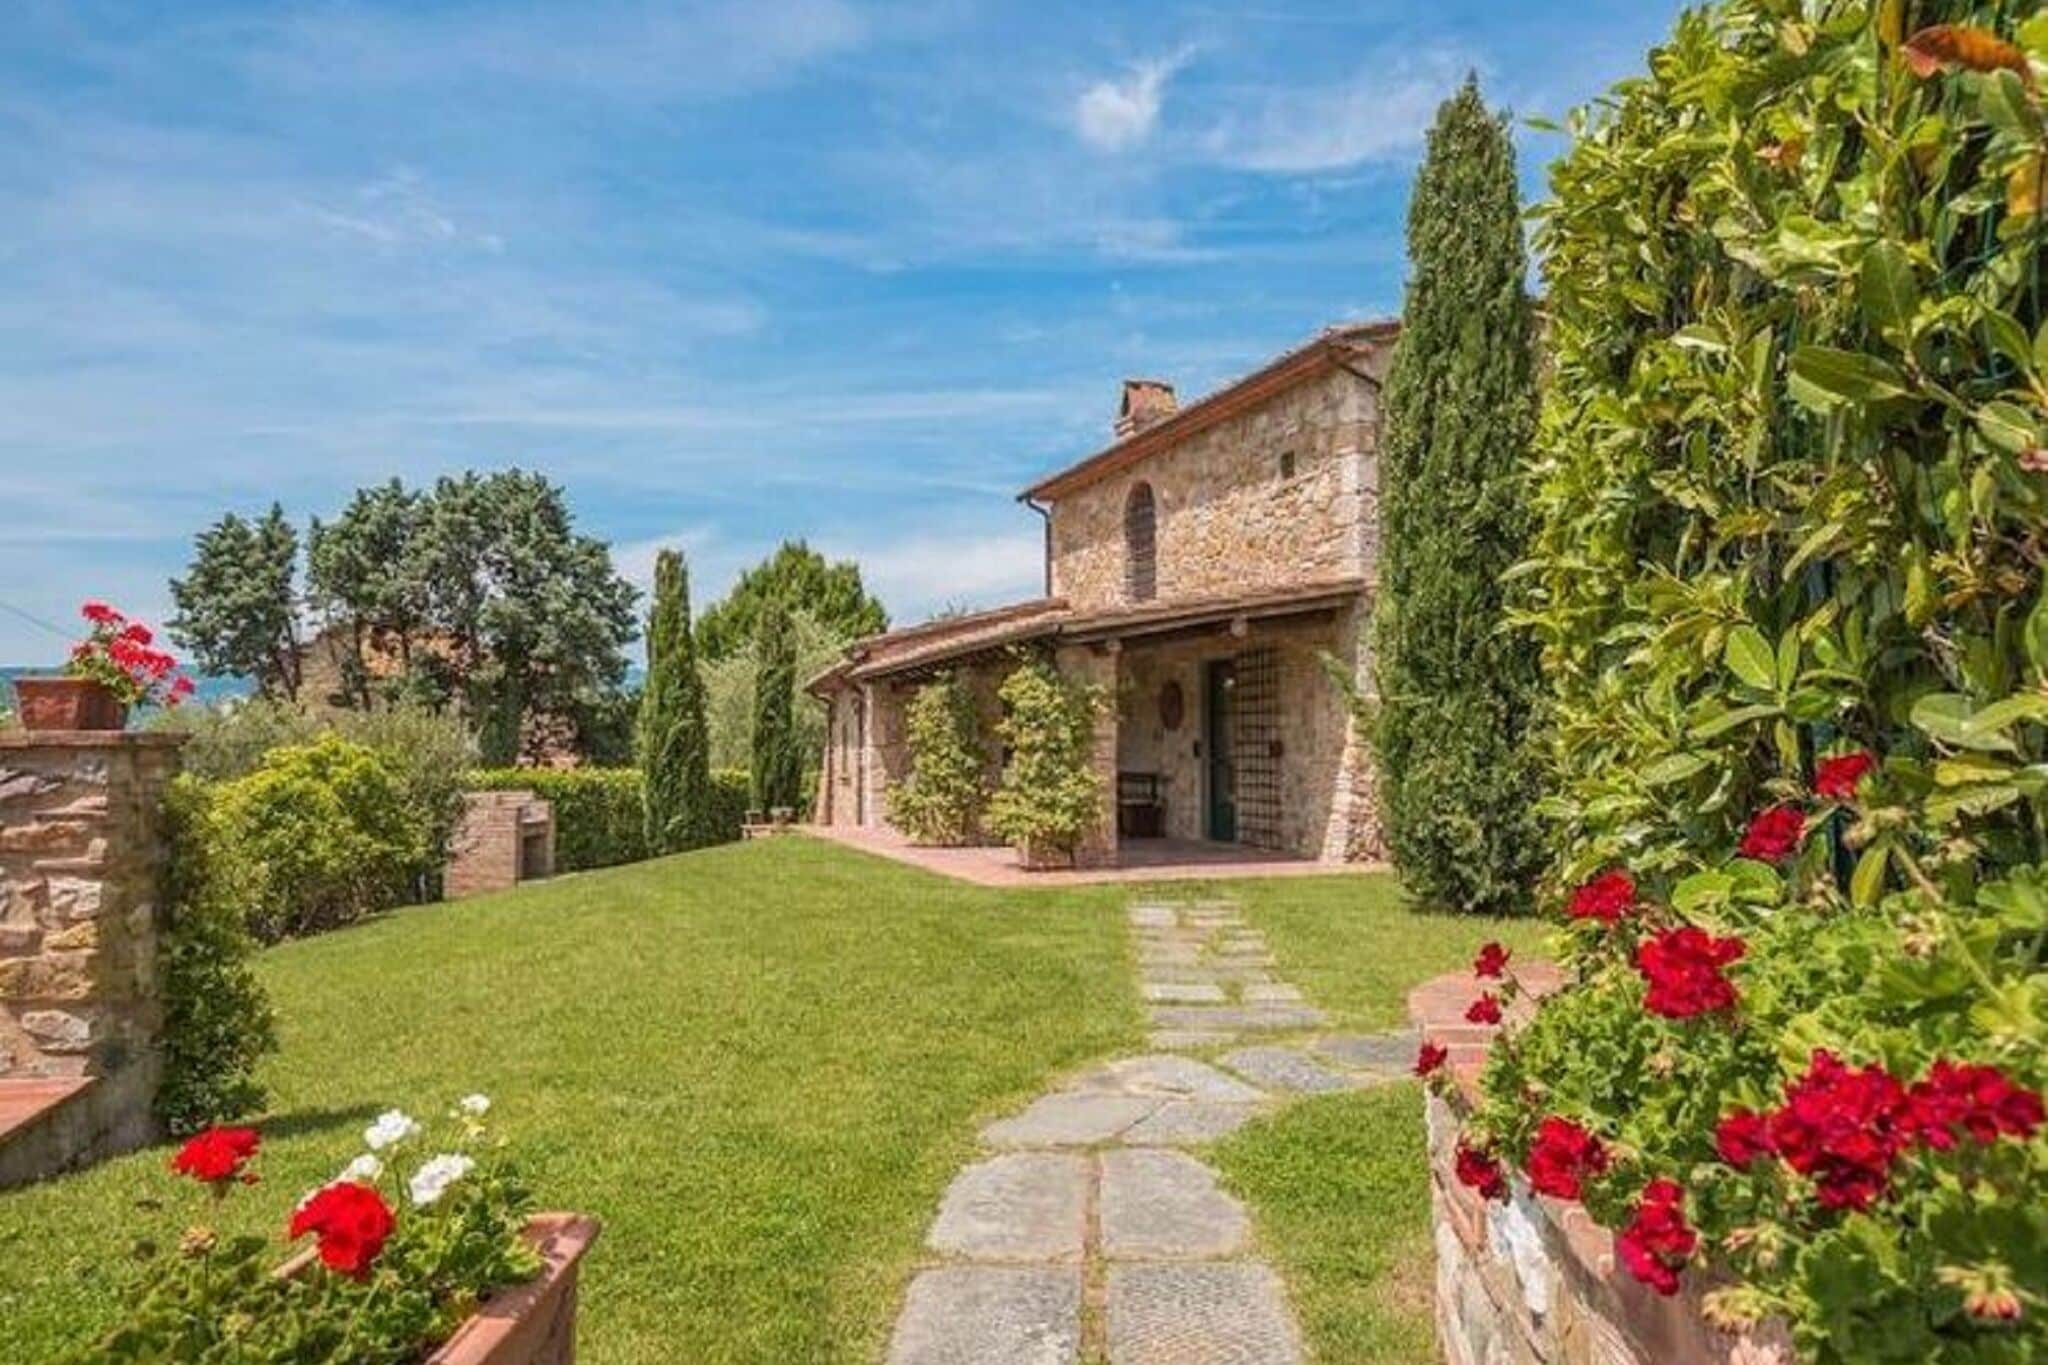 Fijn vakantiehuis in Monsummano Terme met tuin